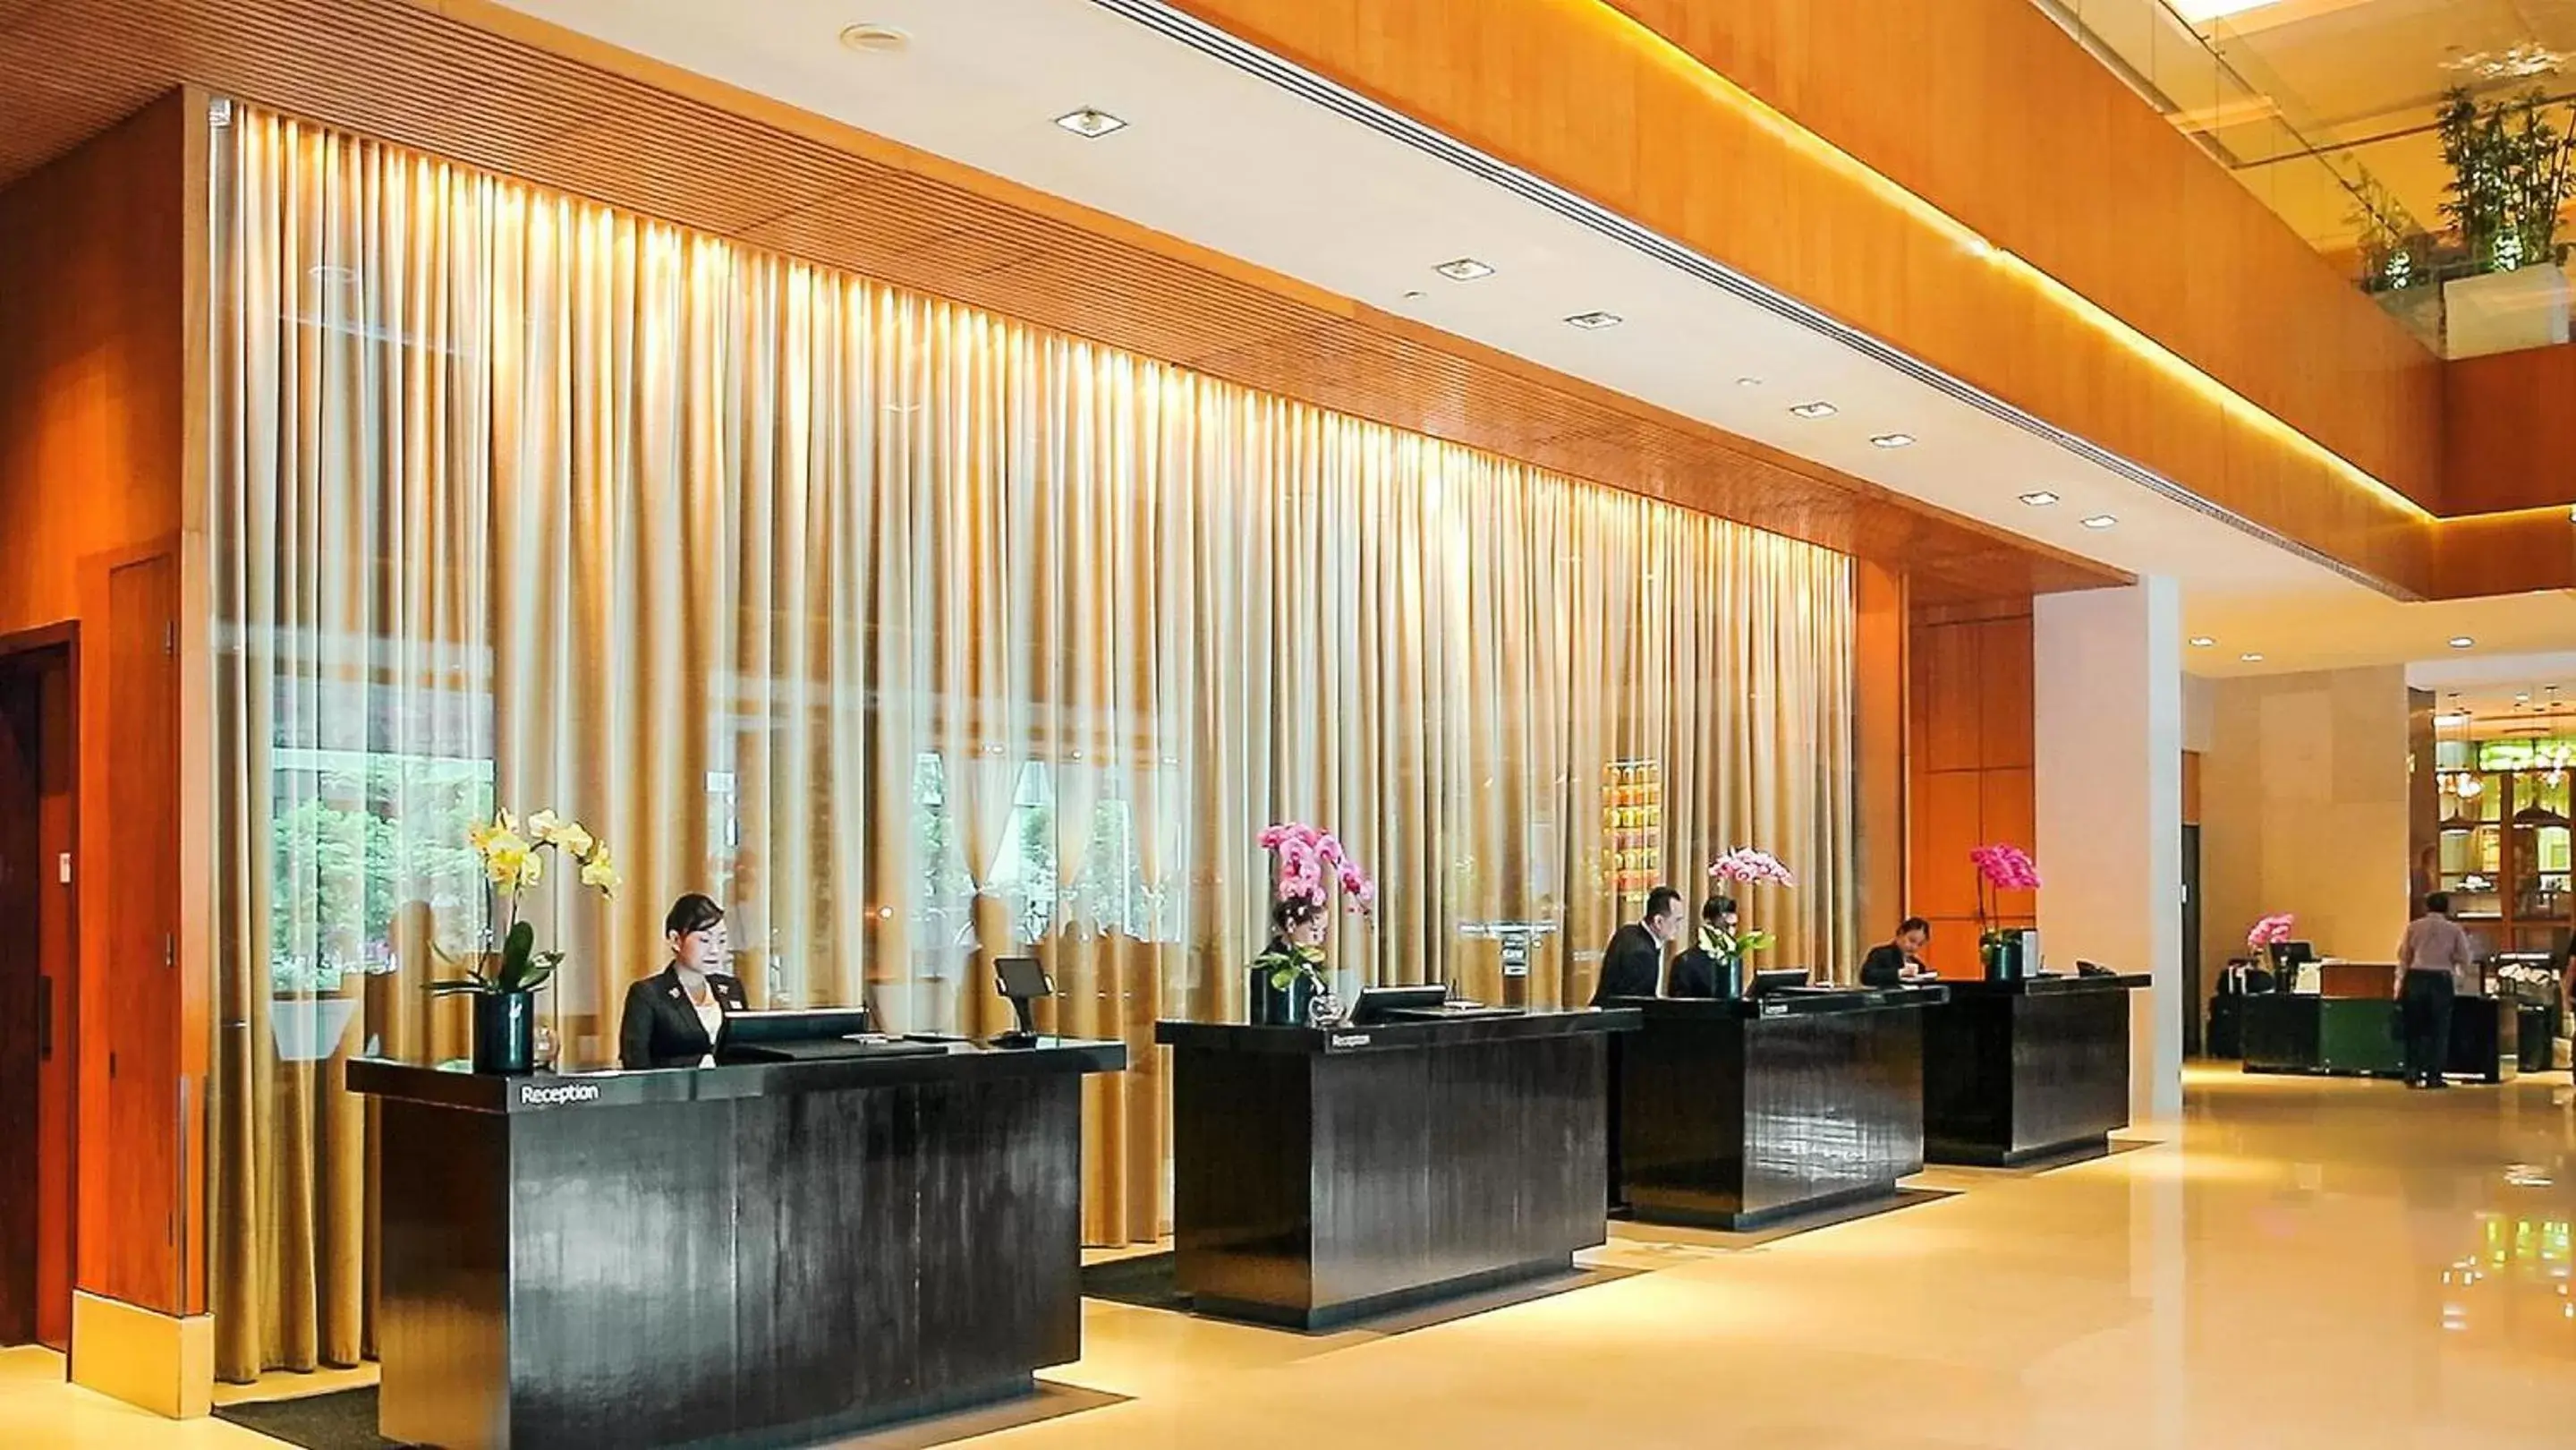 Lobby or reception, Lobby/Reception in Amara Singapore